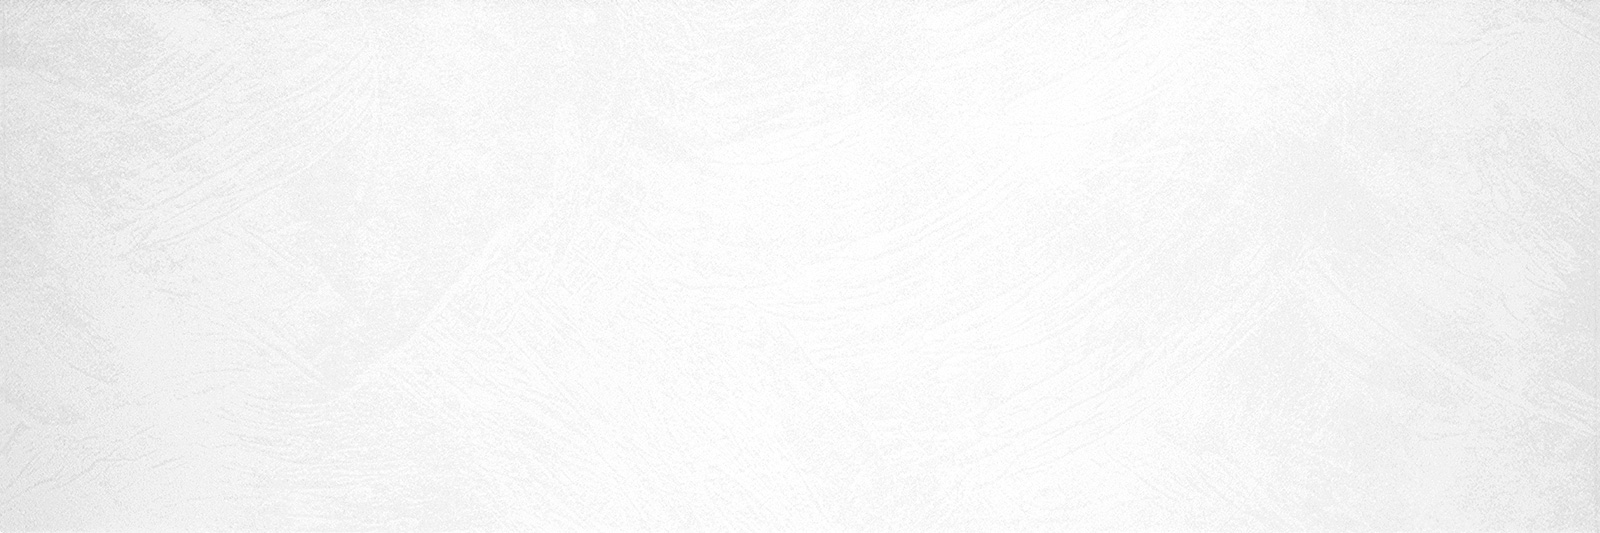 Керамическая плитка Плитка облицовочная Touch White WT11TCH00 600*200*9 (10 шт в уп/57,6 м в пал) / коллекция Bella AltaCera Vesta AltaCera / производитель AltaCera / страна Россия